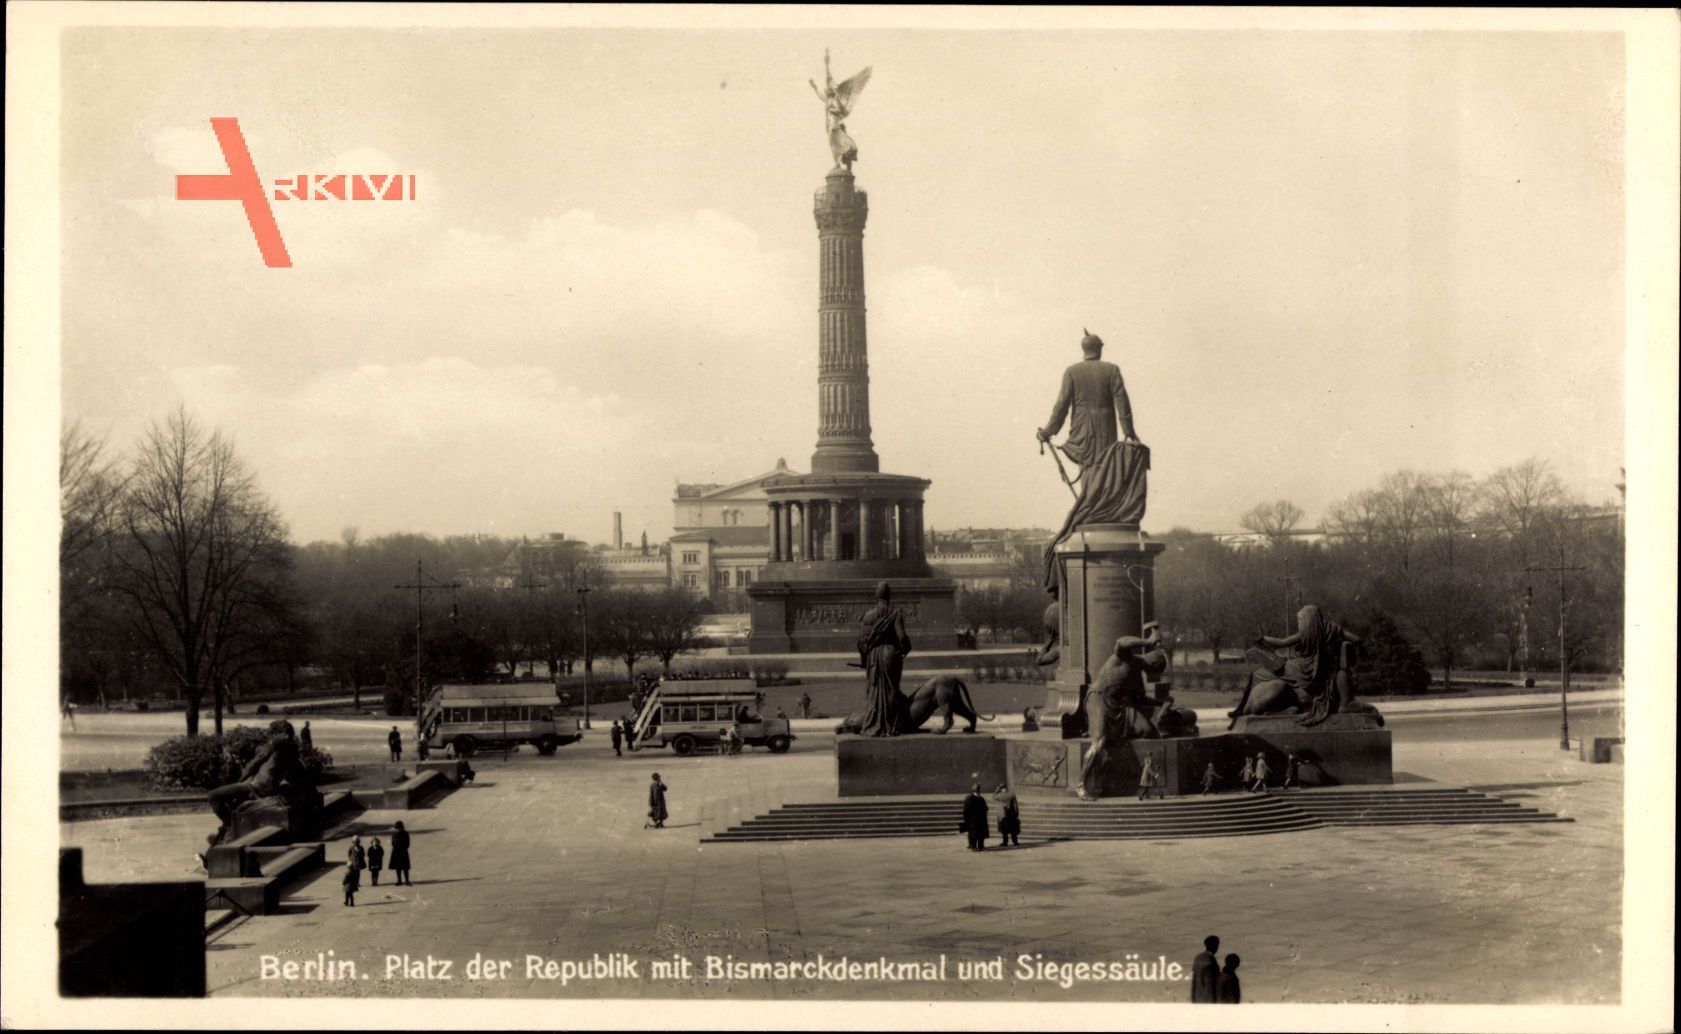 Berlin Tiergarten, Platz der Republik mit Bismarckdenkmal und Siegessäule